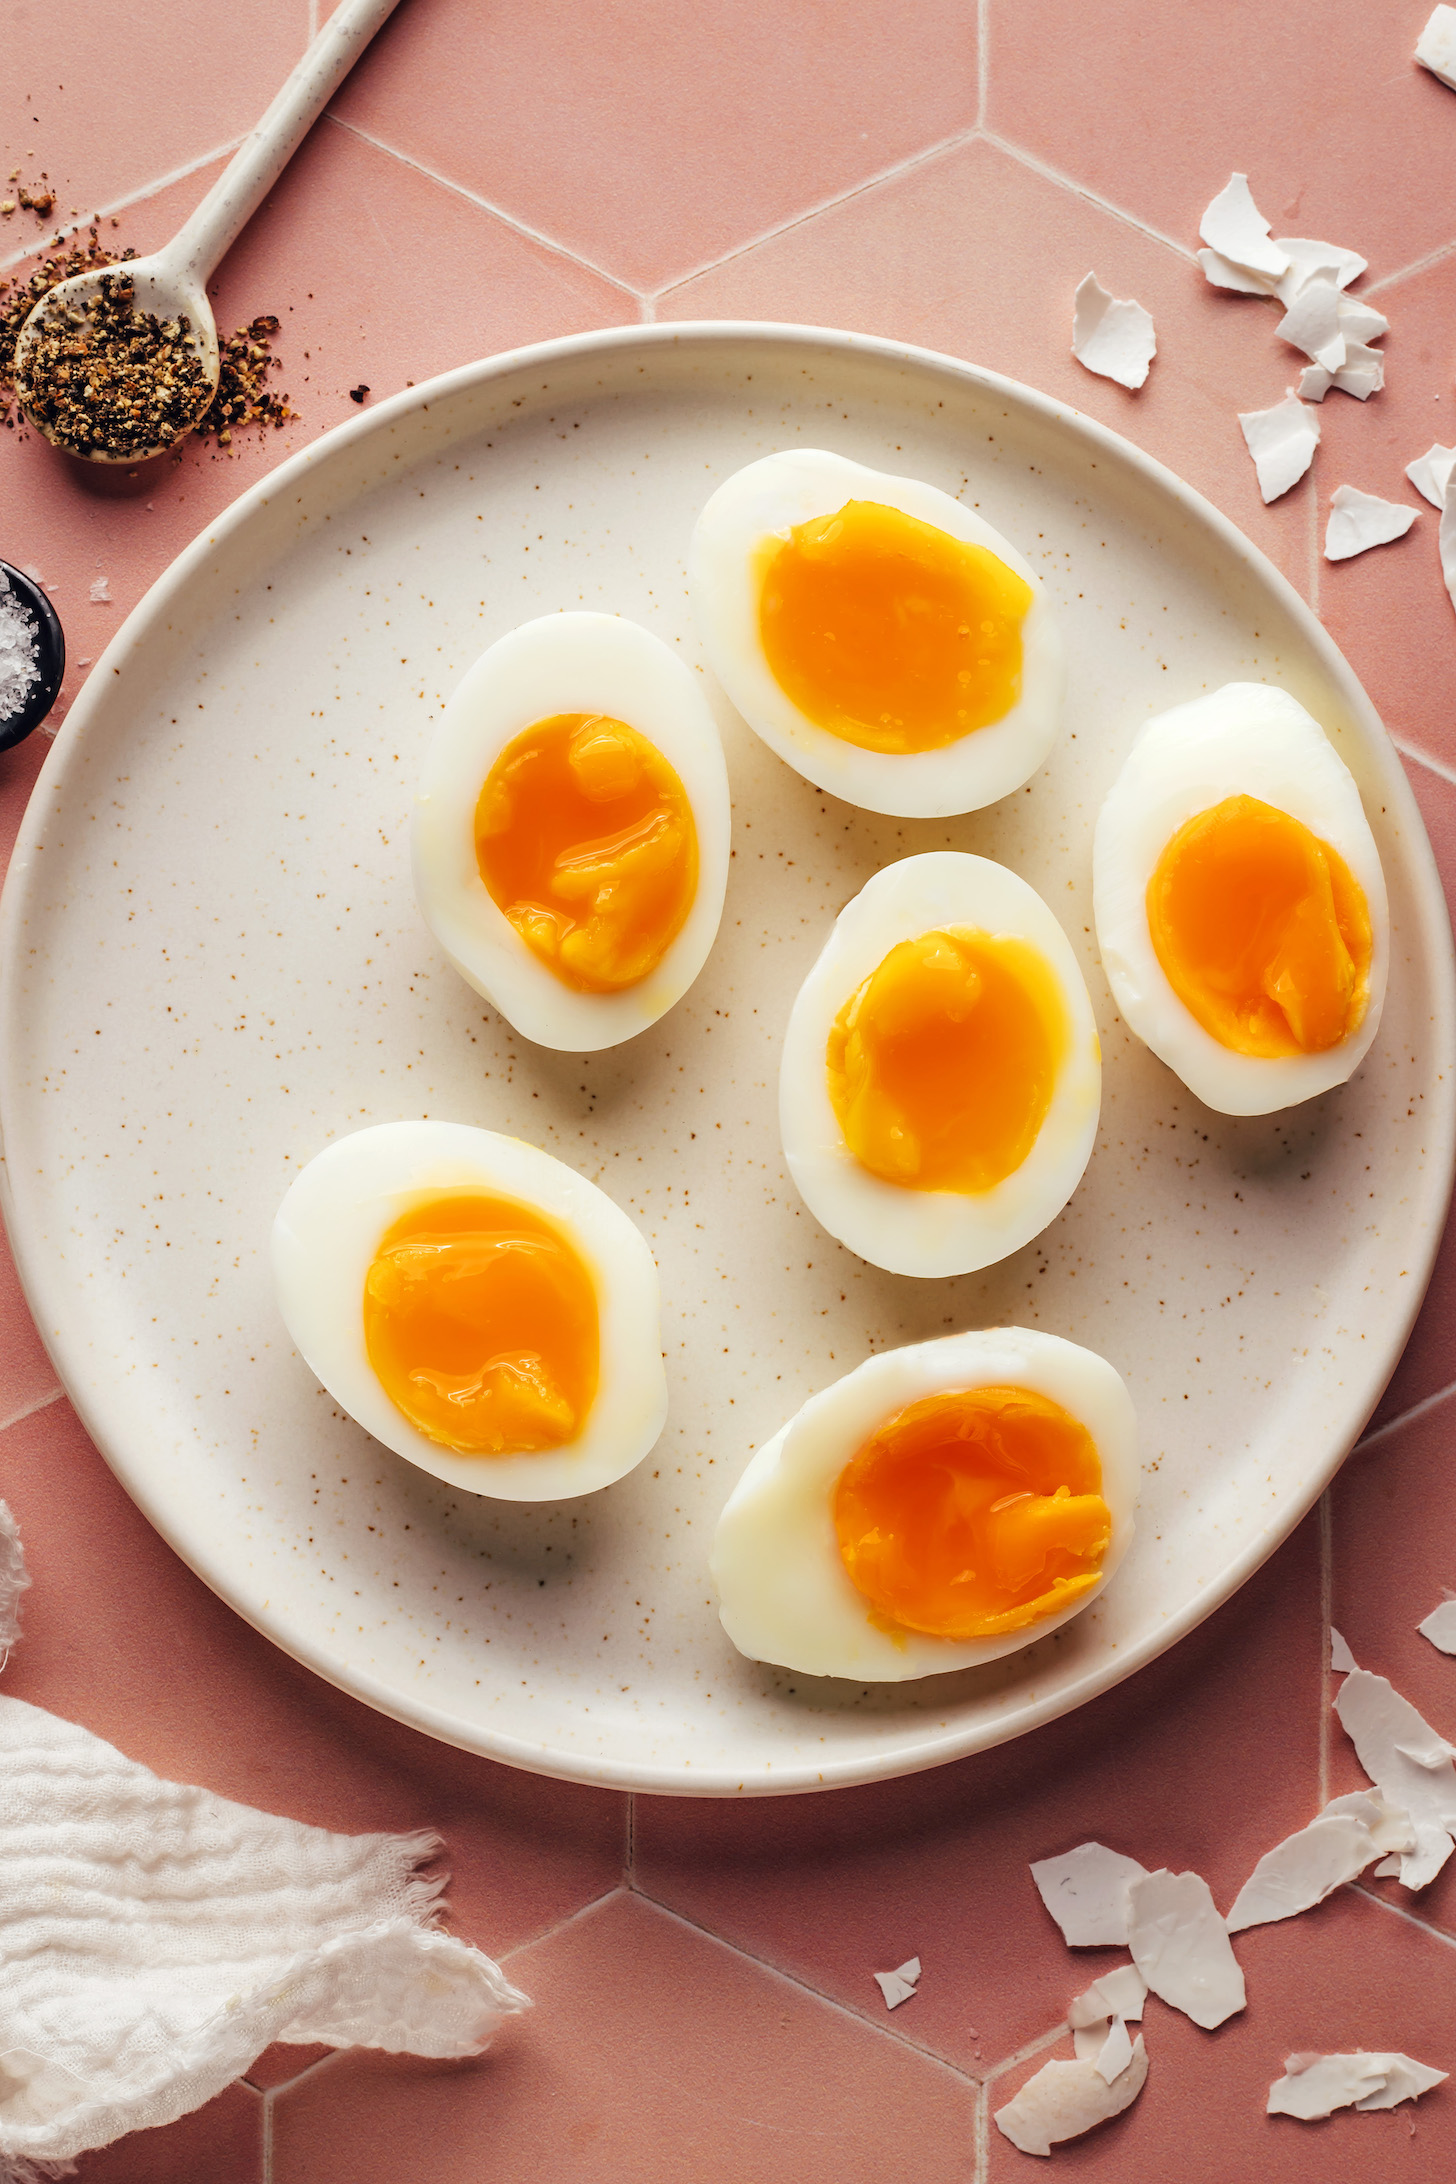 Plato de huevos de mermelada con claras y centros de mermelada perfectamente colocados